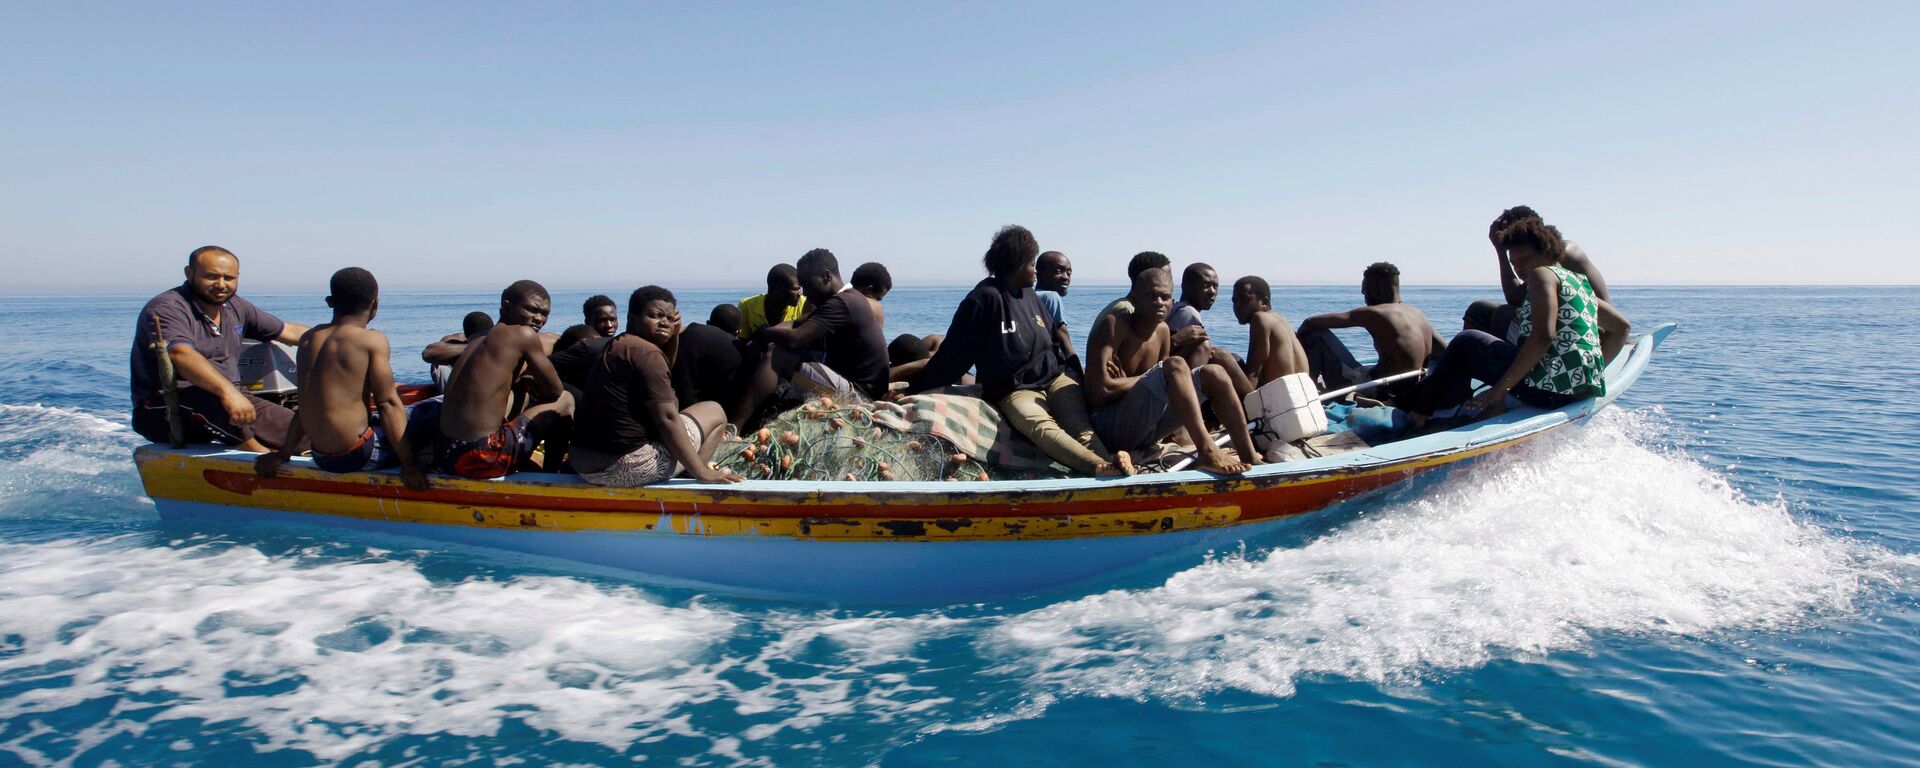 Los migrantes en el barco en el Mediterráneo - Sputnik Mundo, 1920, 18.05.2021